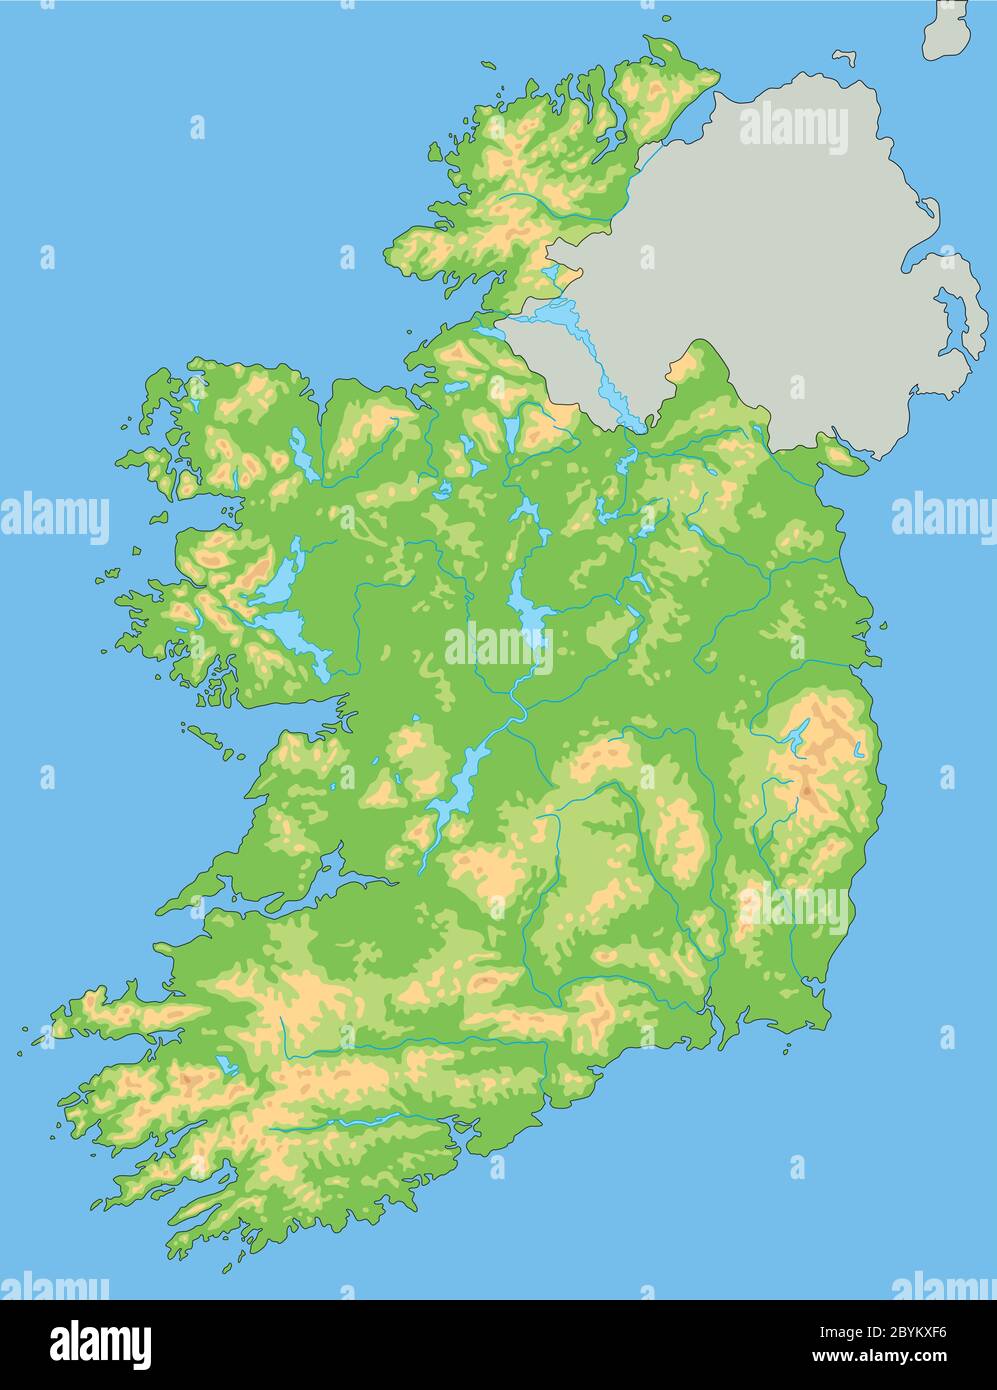 Mappa fisica dell'Irlanda dettagliata Immagine e Vettoriale - Alamy